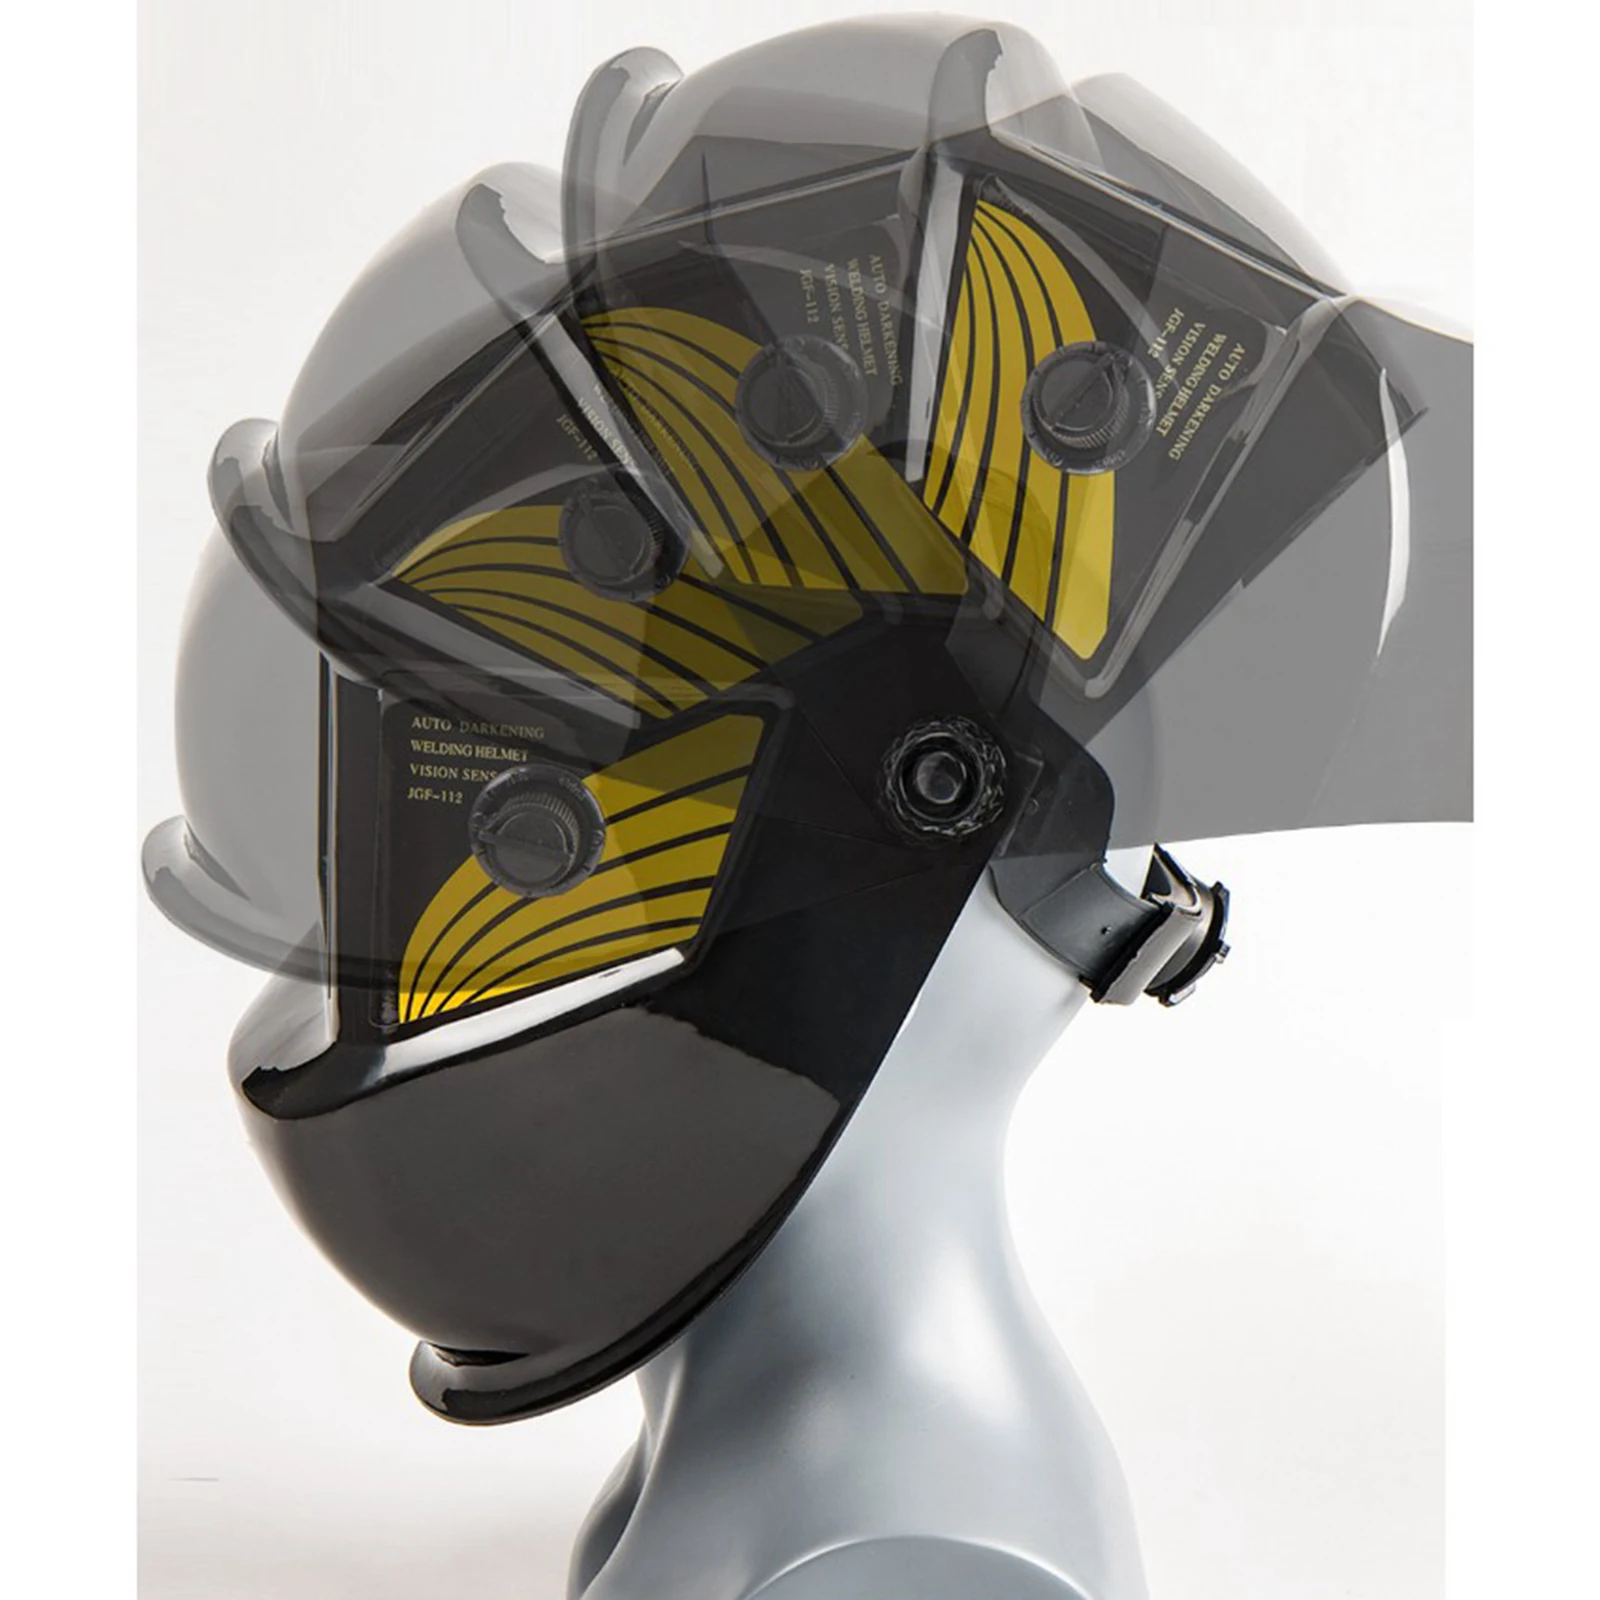 Solar Auto Darkening Welding  Professional Welding Helmet Shade Cap